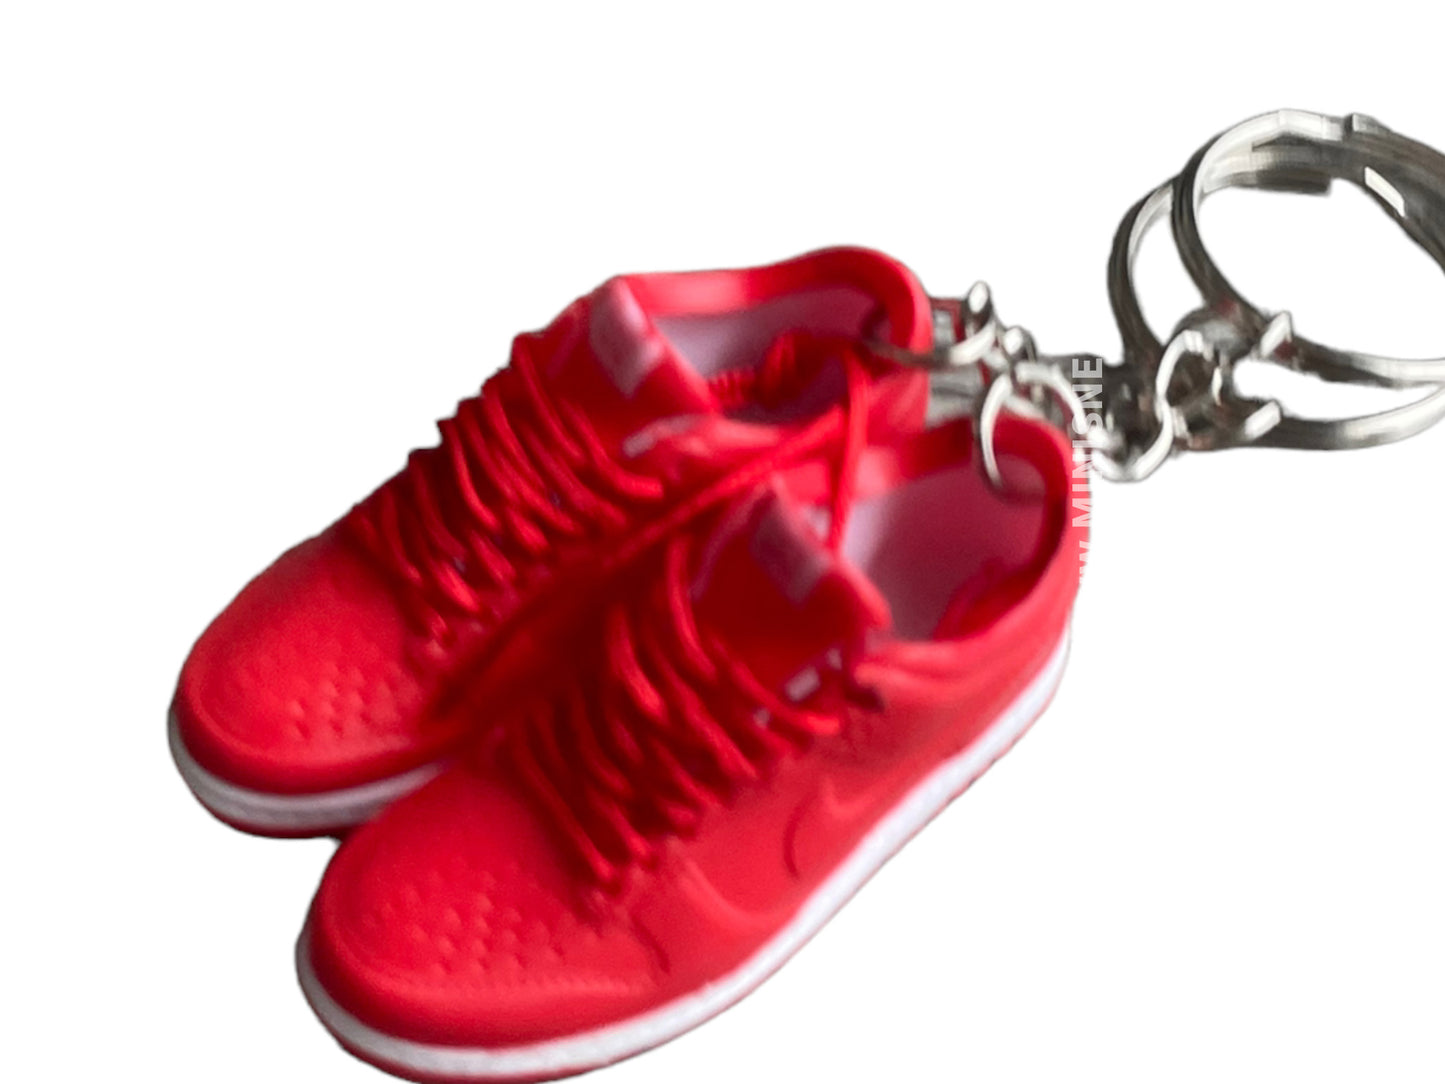 Mini sneaker keychain 3D Dunk - Chili